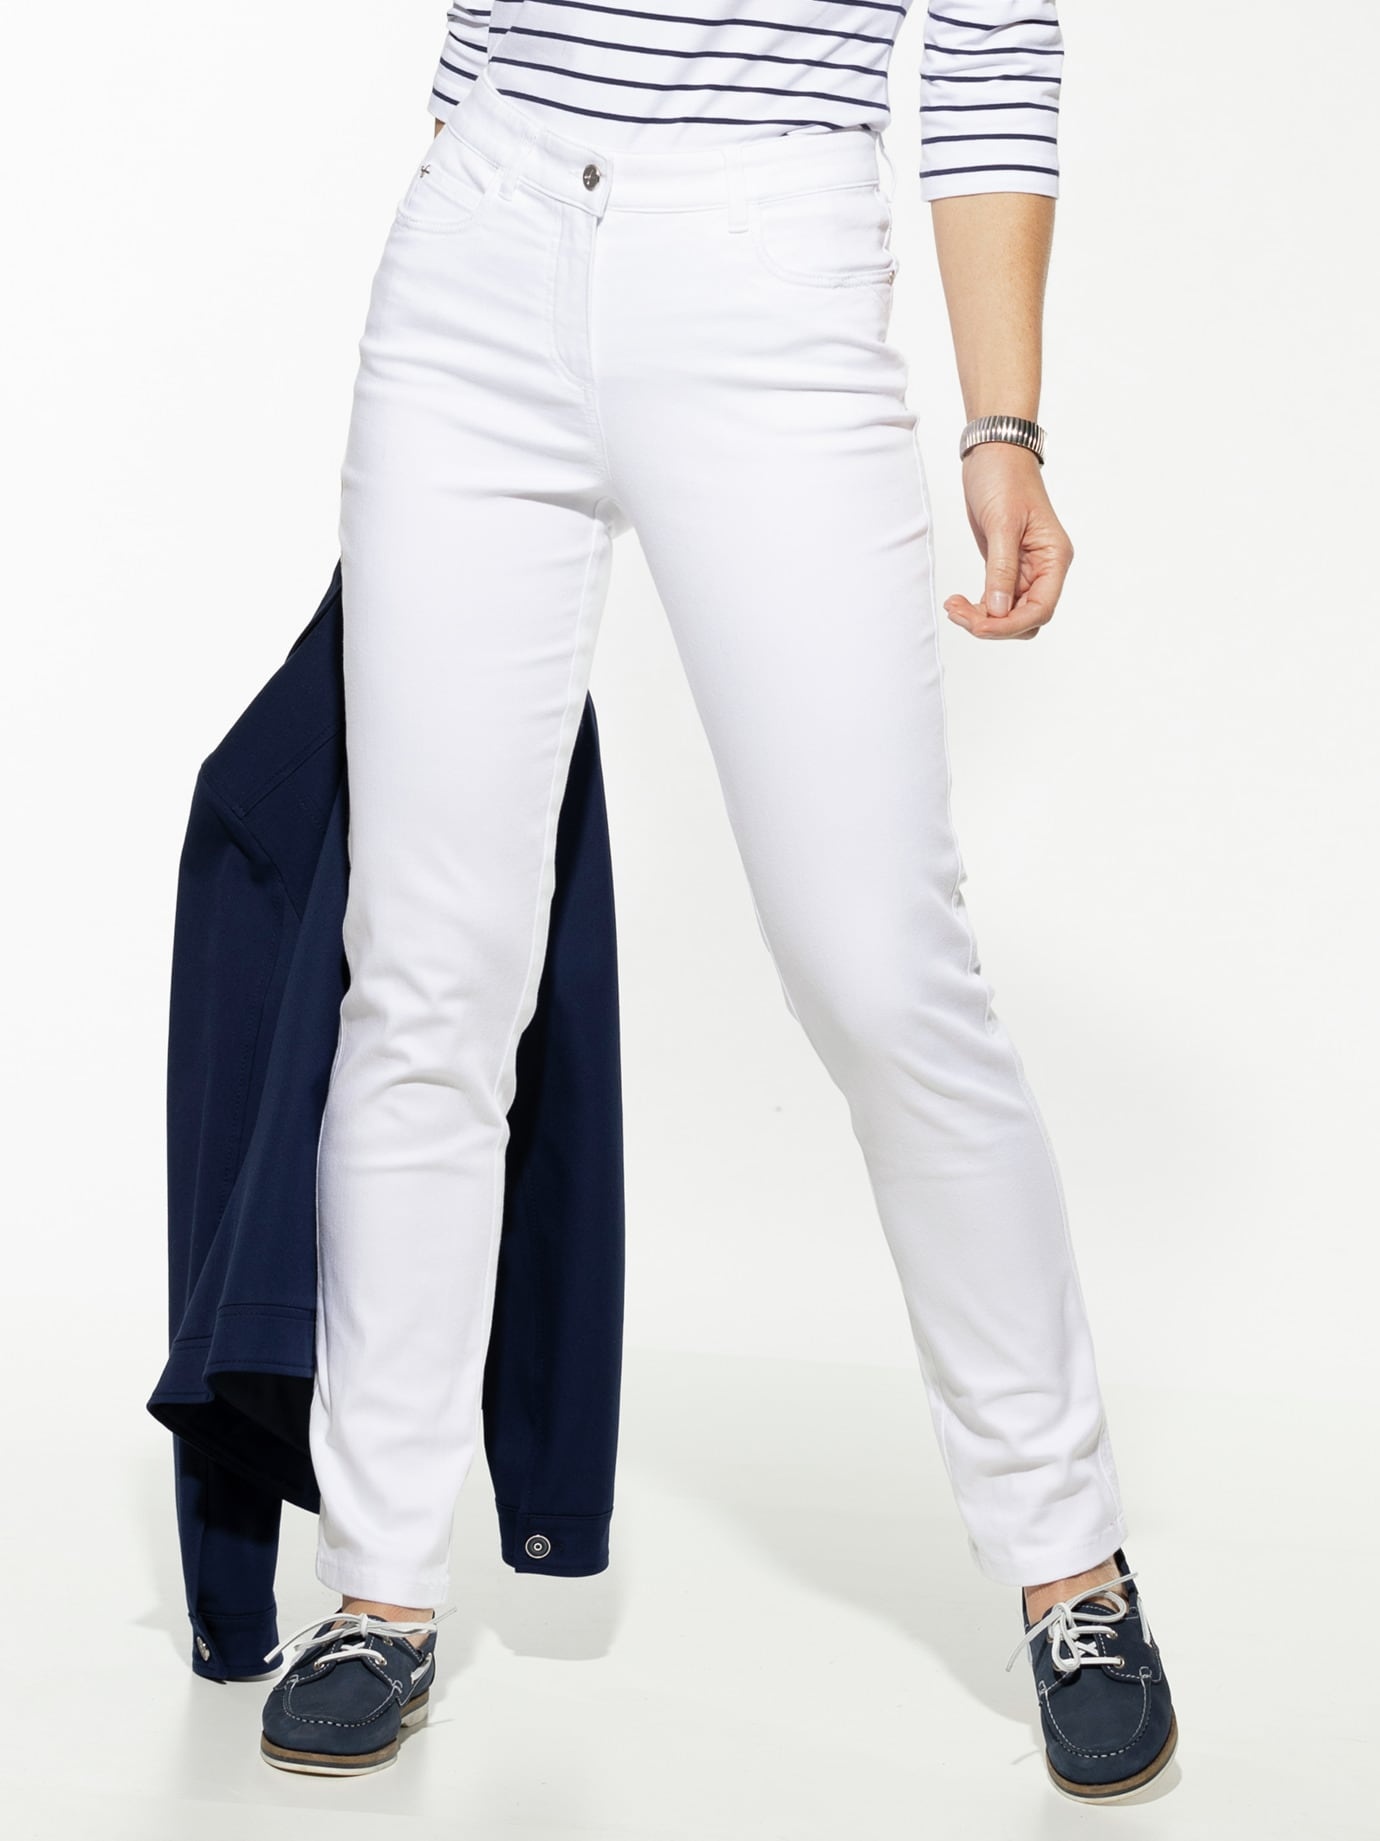 Walbusch Damen Jeans Bestform einfarbig Weiß 38